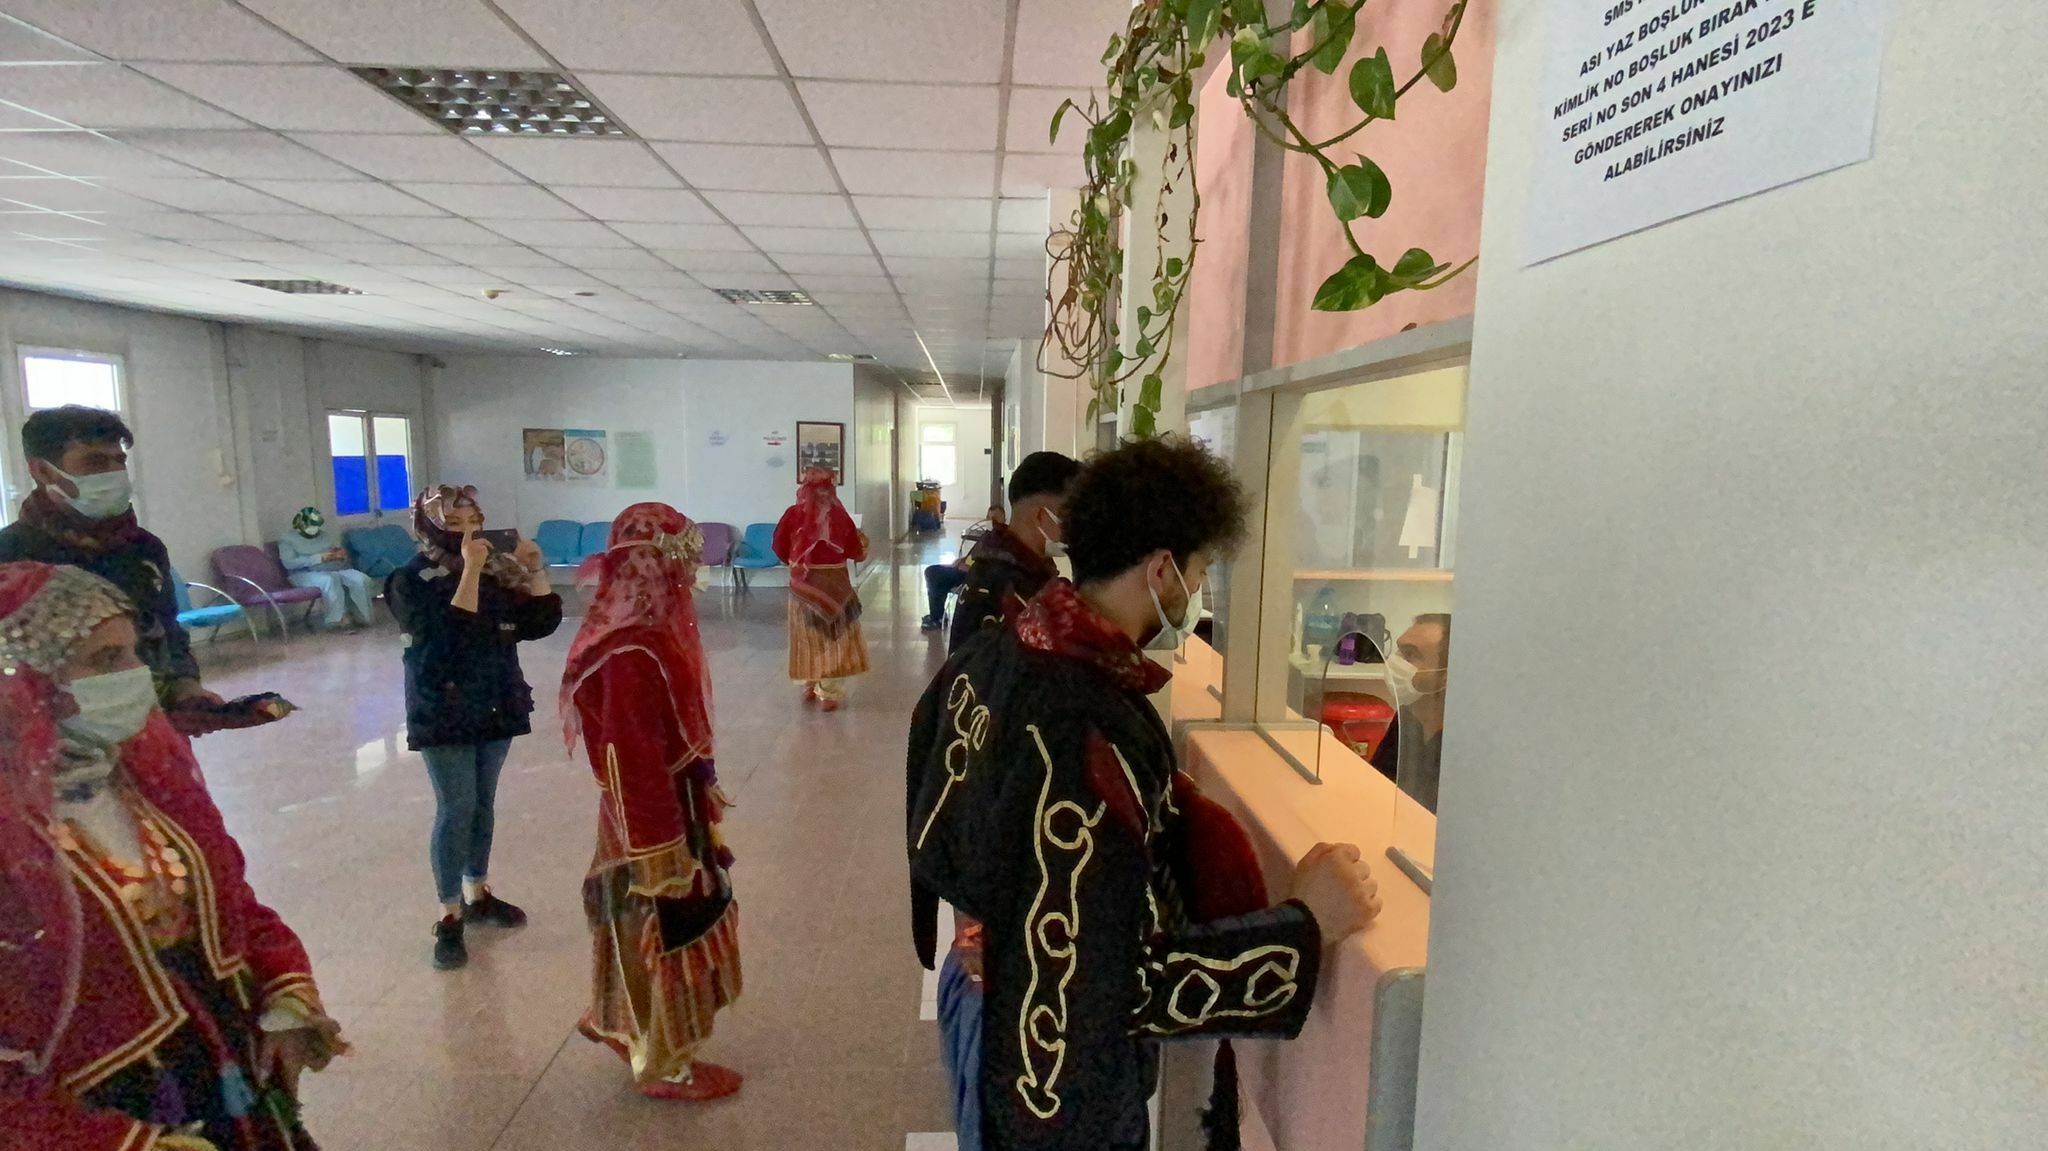 Afyonkarahisar'ın Bolvadin ilçesinde halk oyunları ekibi, yöresel kıyafetlerini giyerek hastaneye aşı olmaya geldiler. Halk oyunları ekibi bir yandan aşılarını yaptırırken bir yandan da vatandaşları aşı olmaya davet etti.